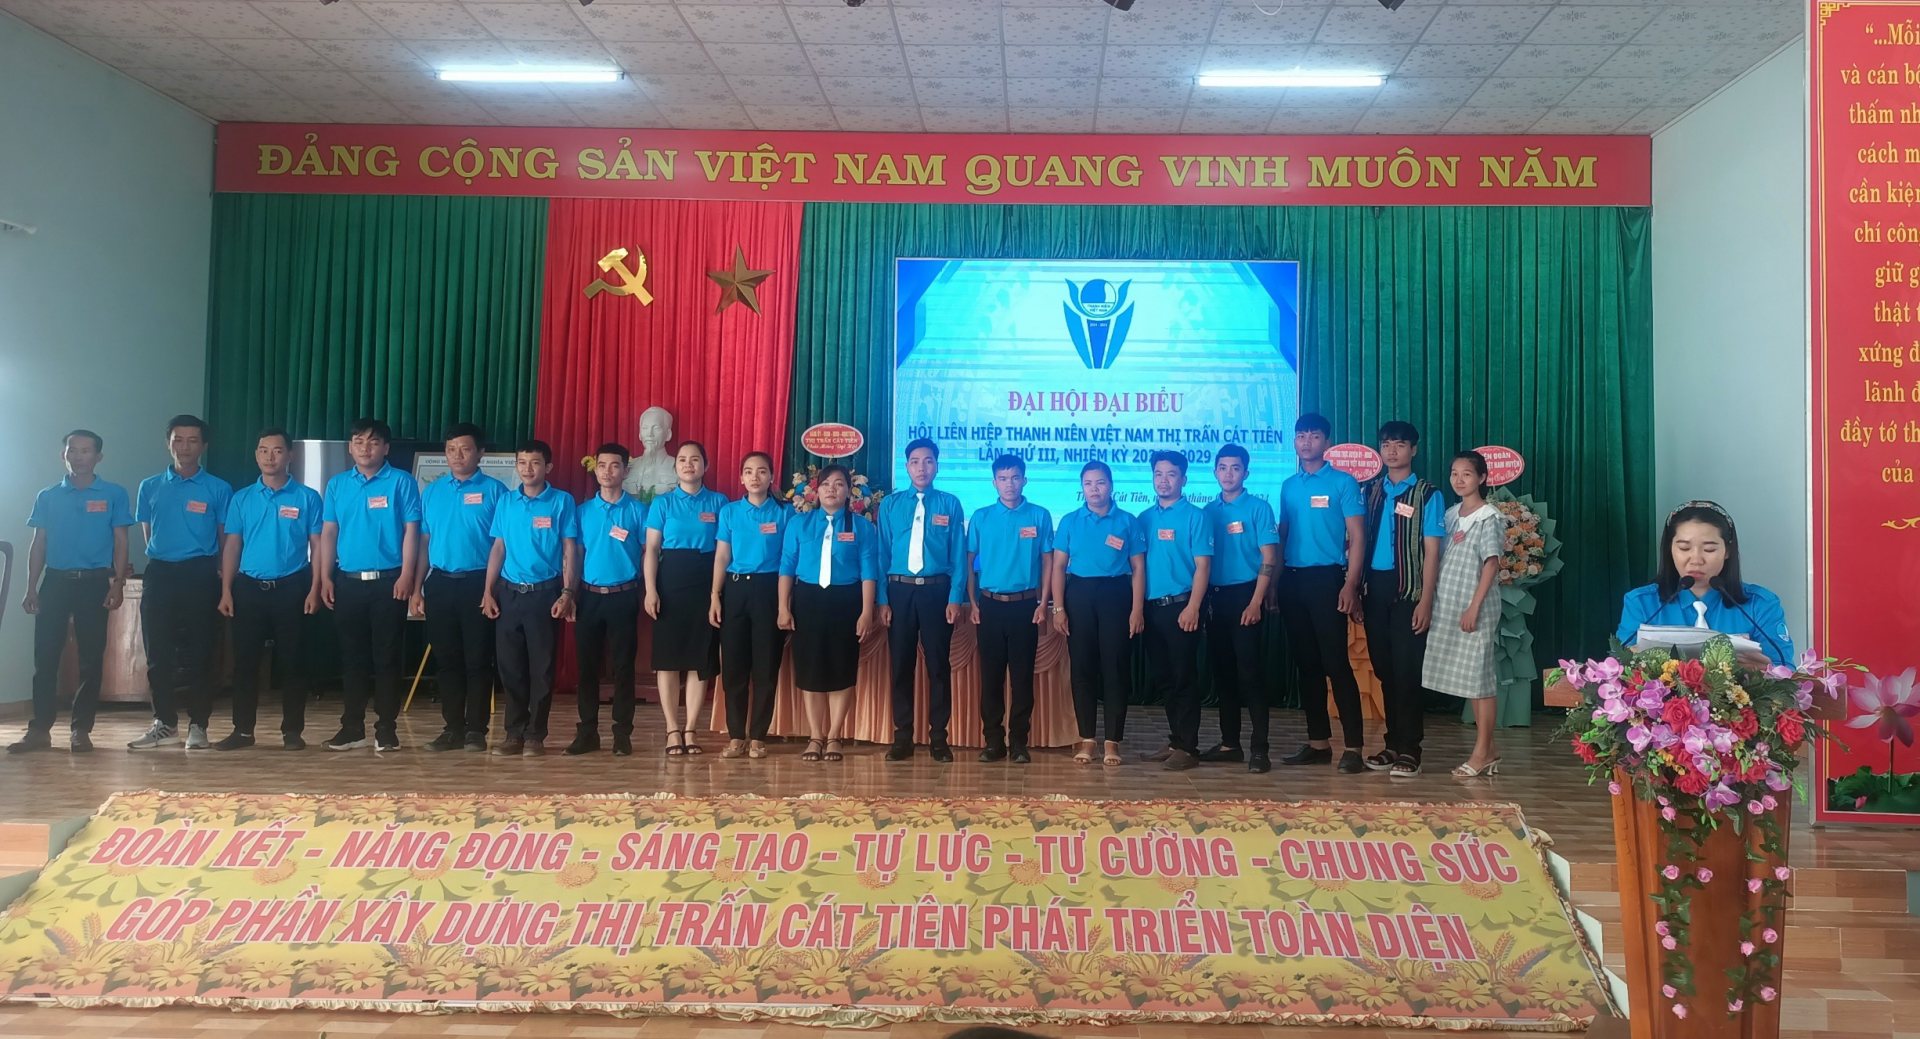 Cát Tiên: Hội LHTN Việt Nam thị trấn Cát Tiên tổ chức thành công đại hội điểm